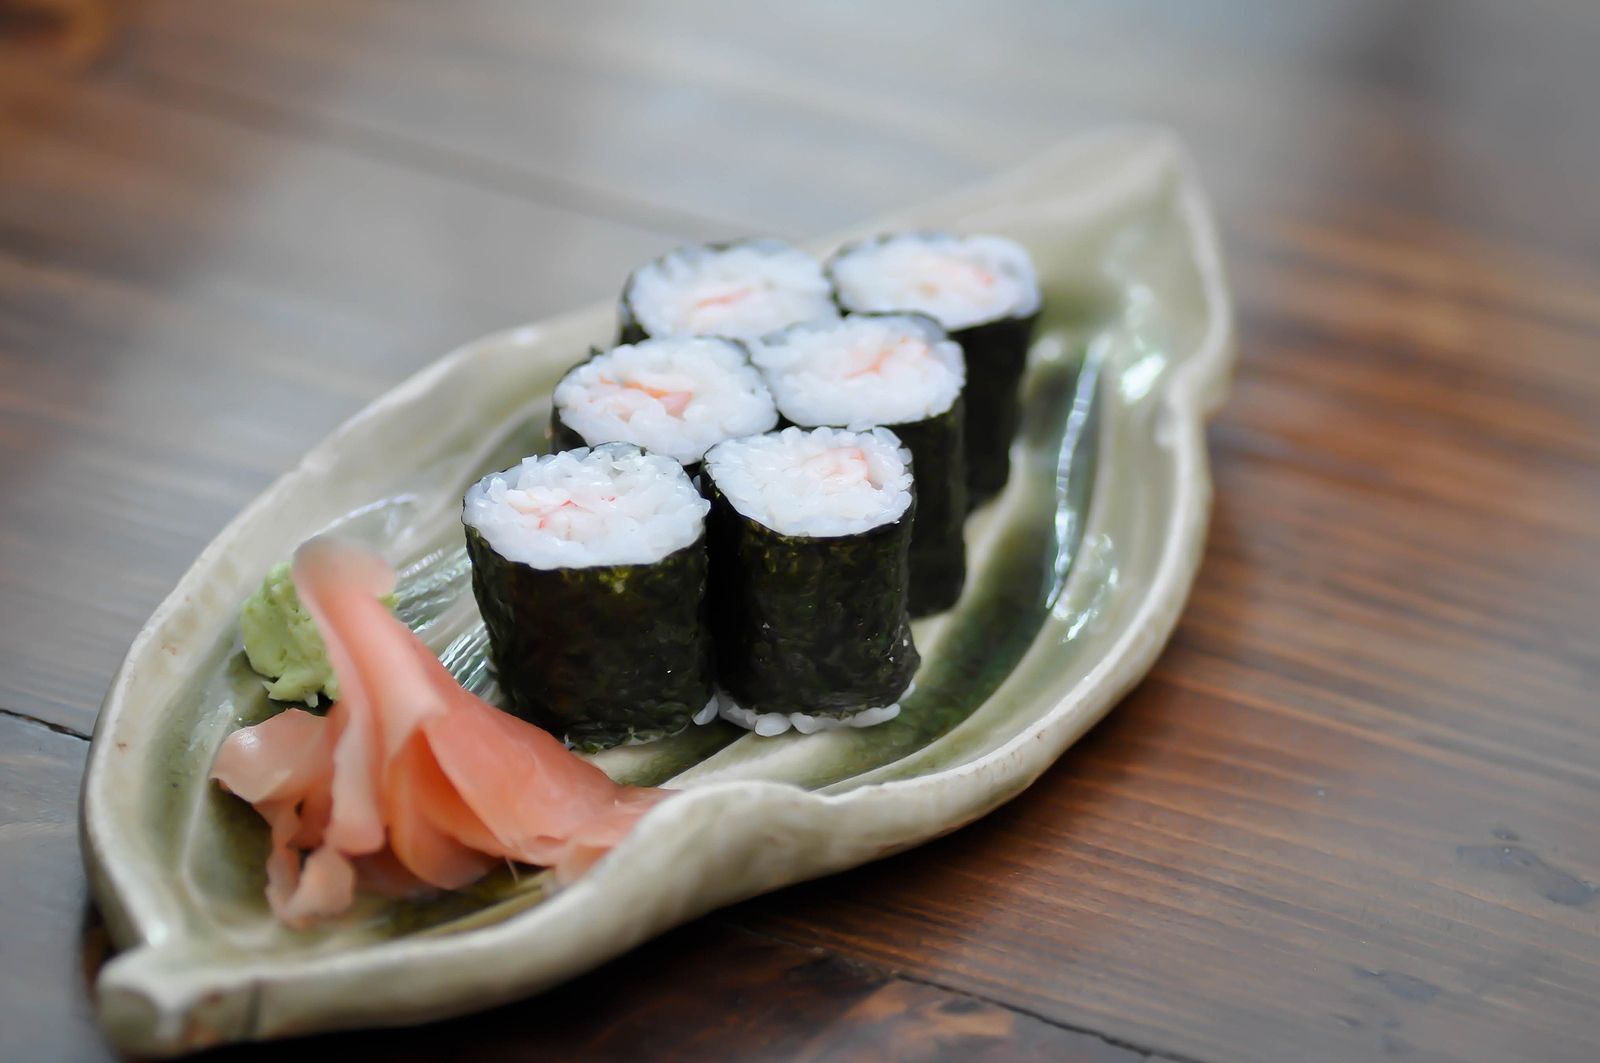 Preparar sushi en casa es fácil con estos ingredientes